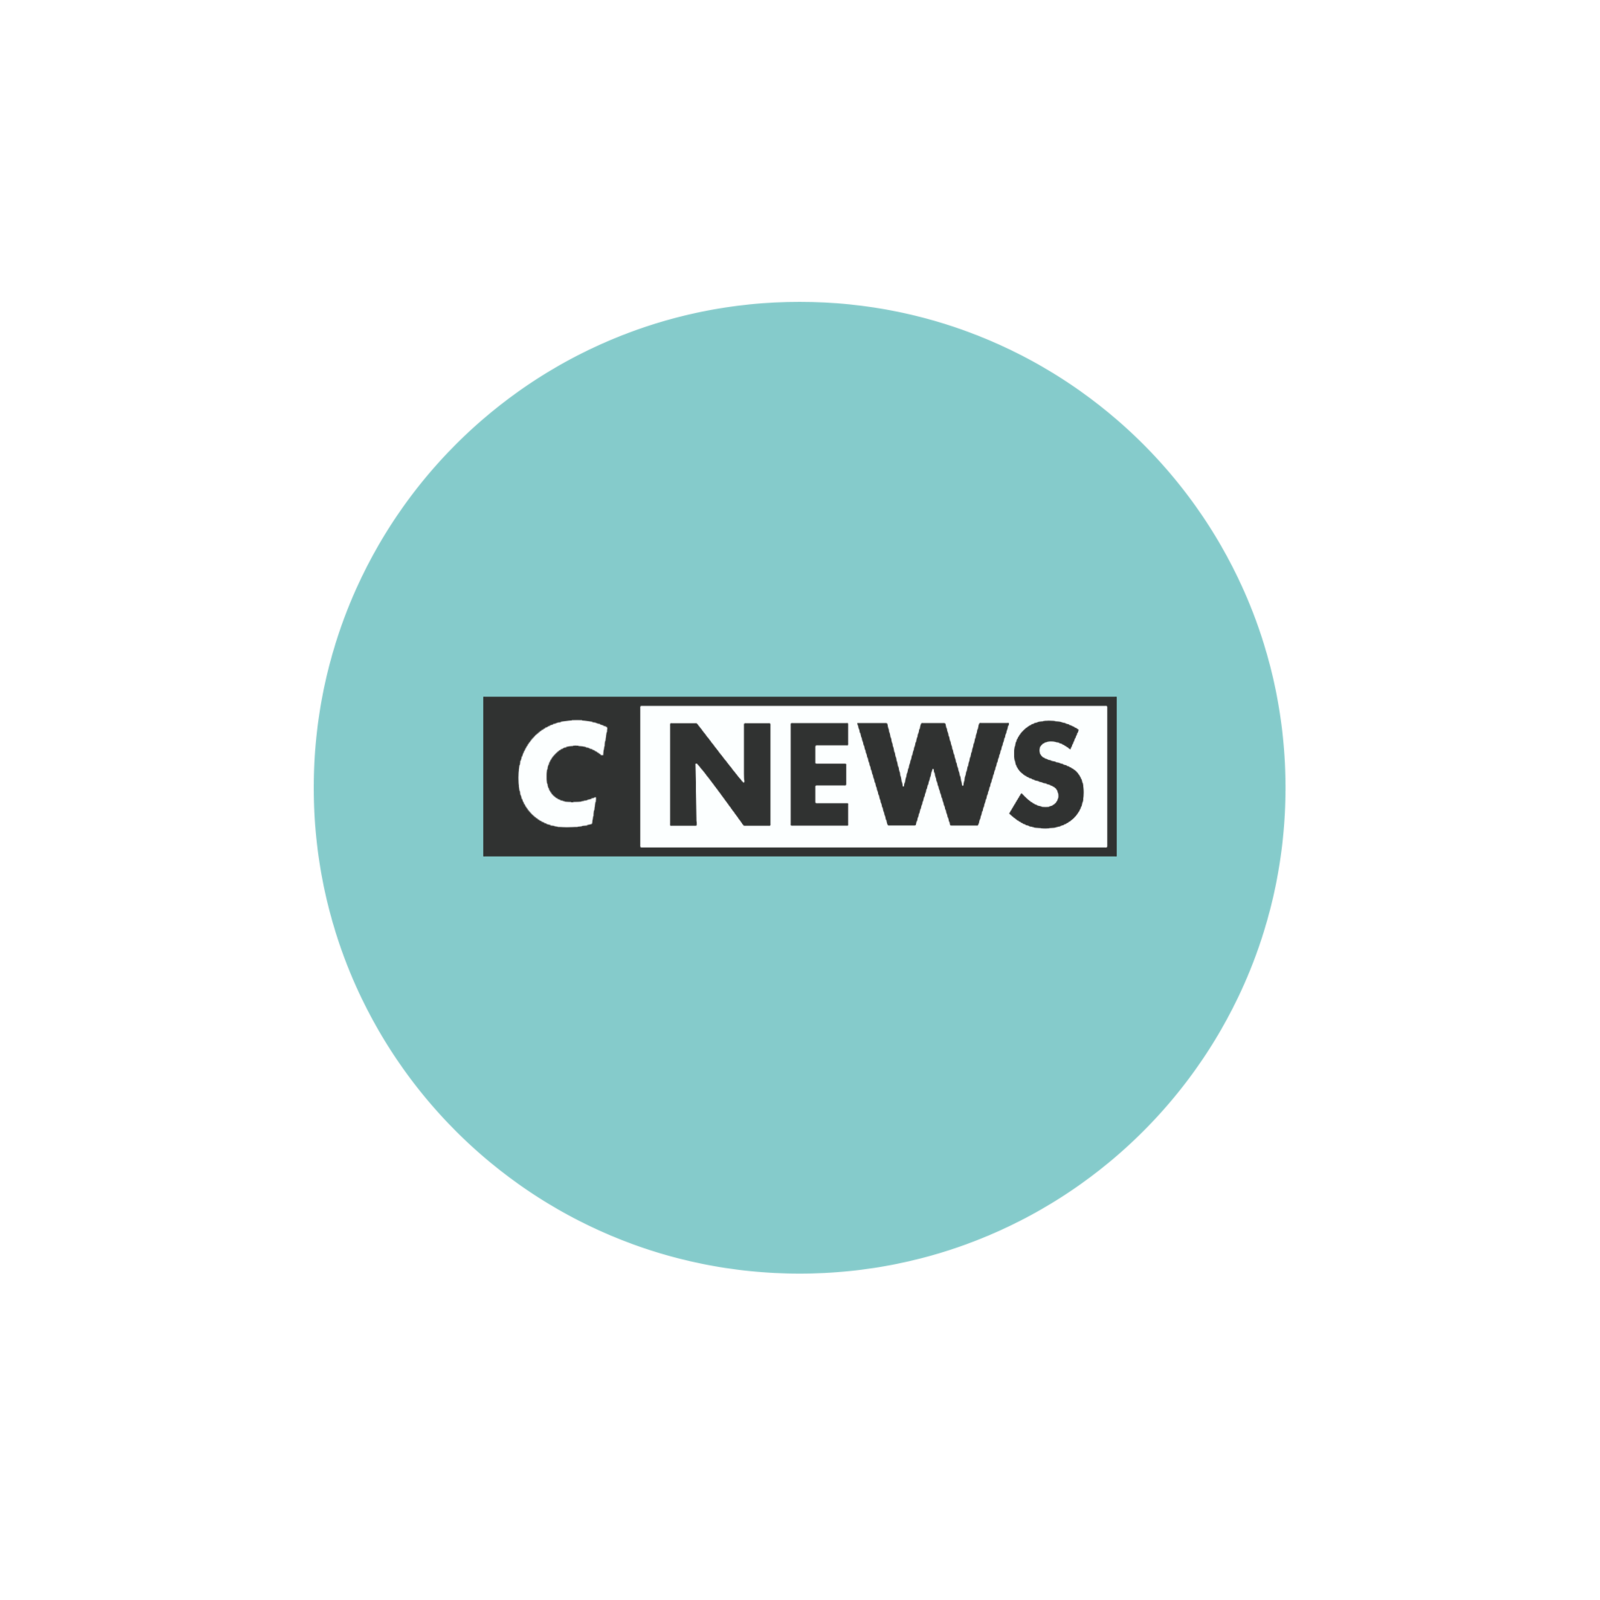 La grille semaine et week-end de CNews cette saison 2019-2020.